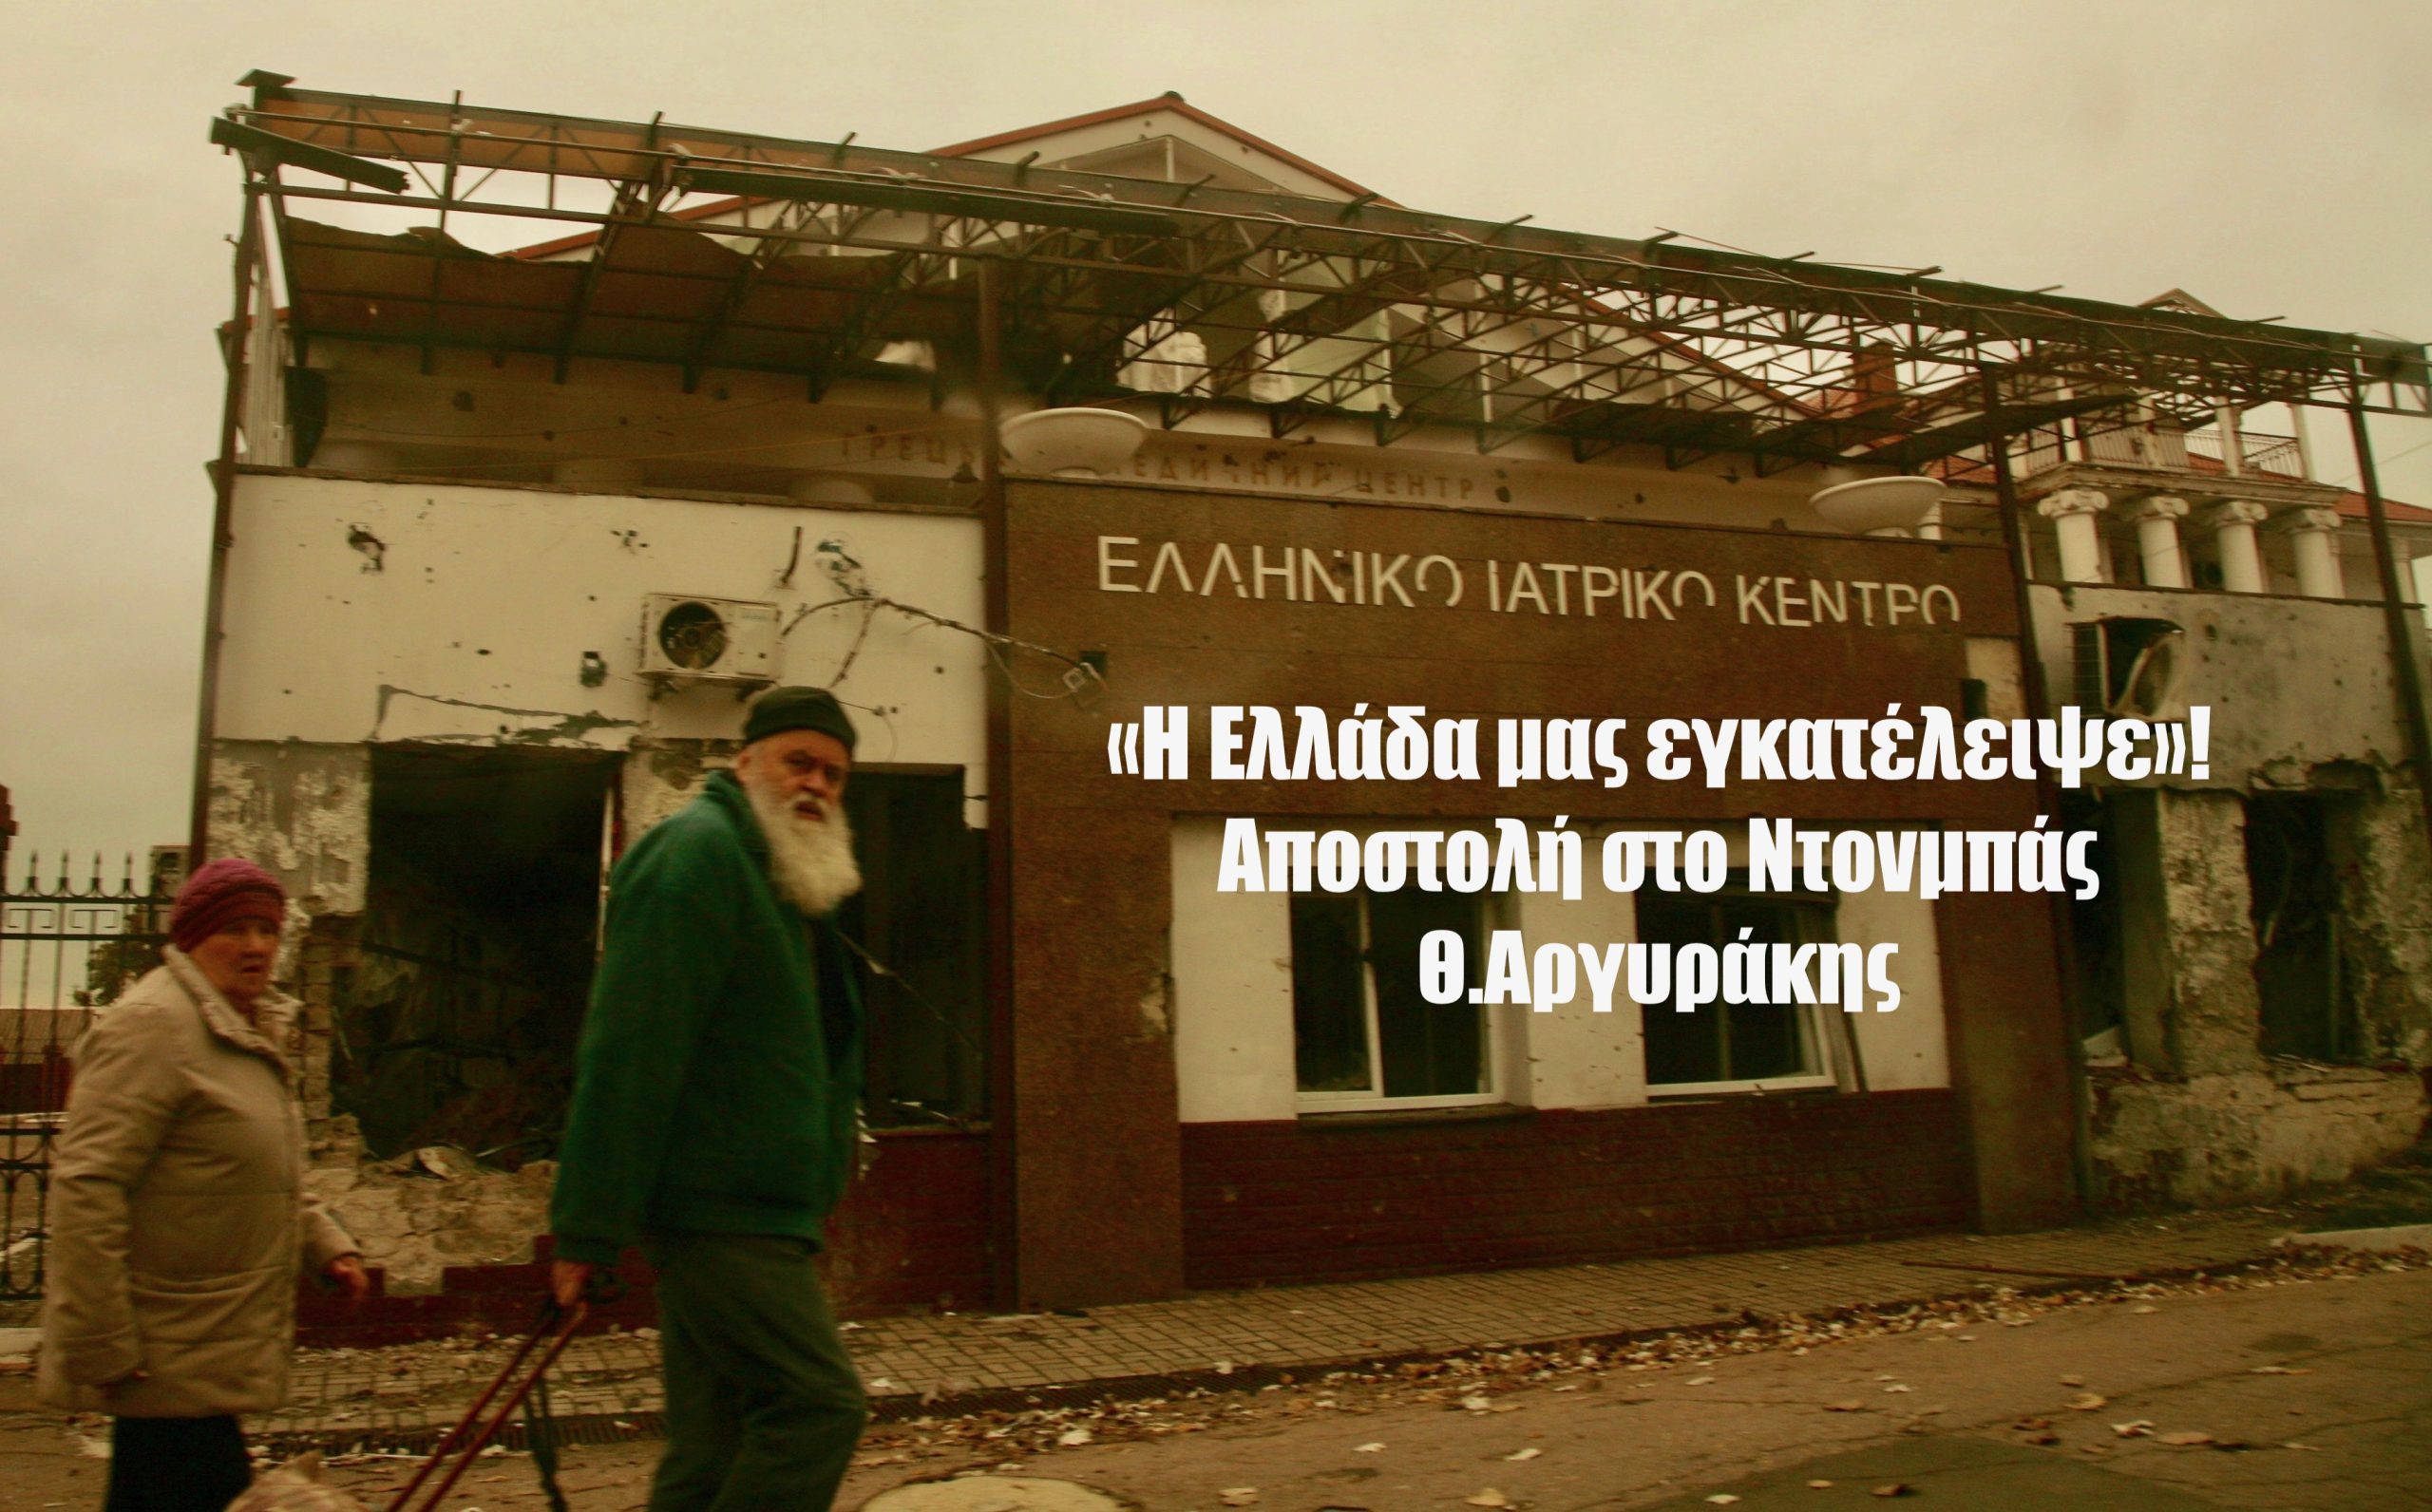 «Η Ελλάδα μας εγκατέλειψε»! Η κραυγή των Ελλήνων από την ανατολική Ουκρανία-Αποστολή Θ.Αργυράκης